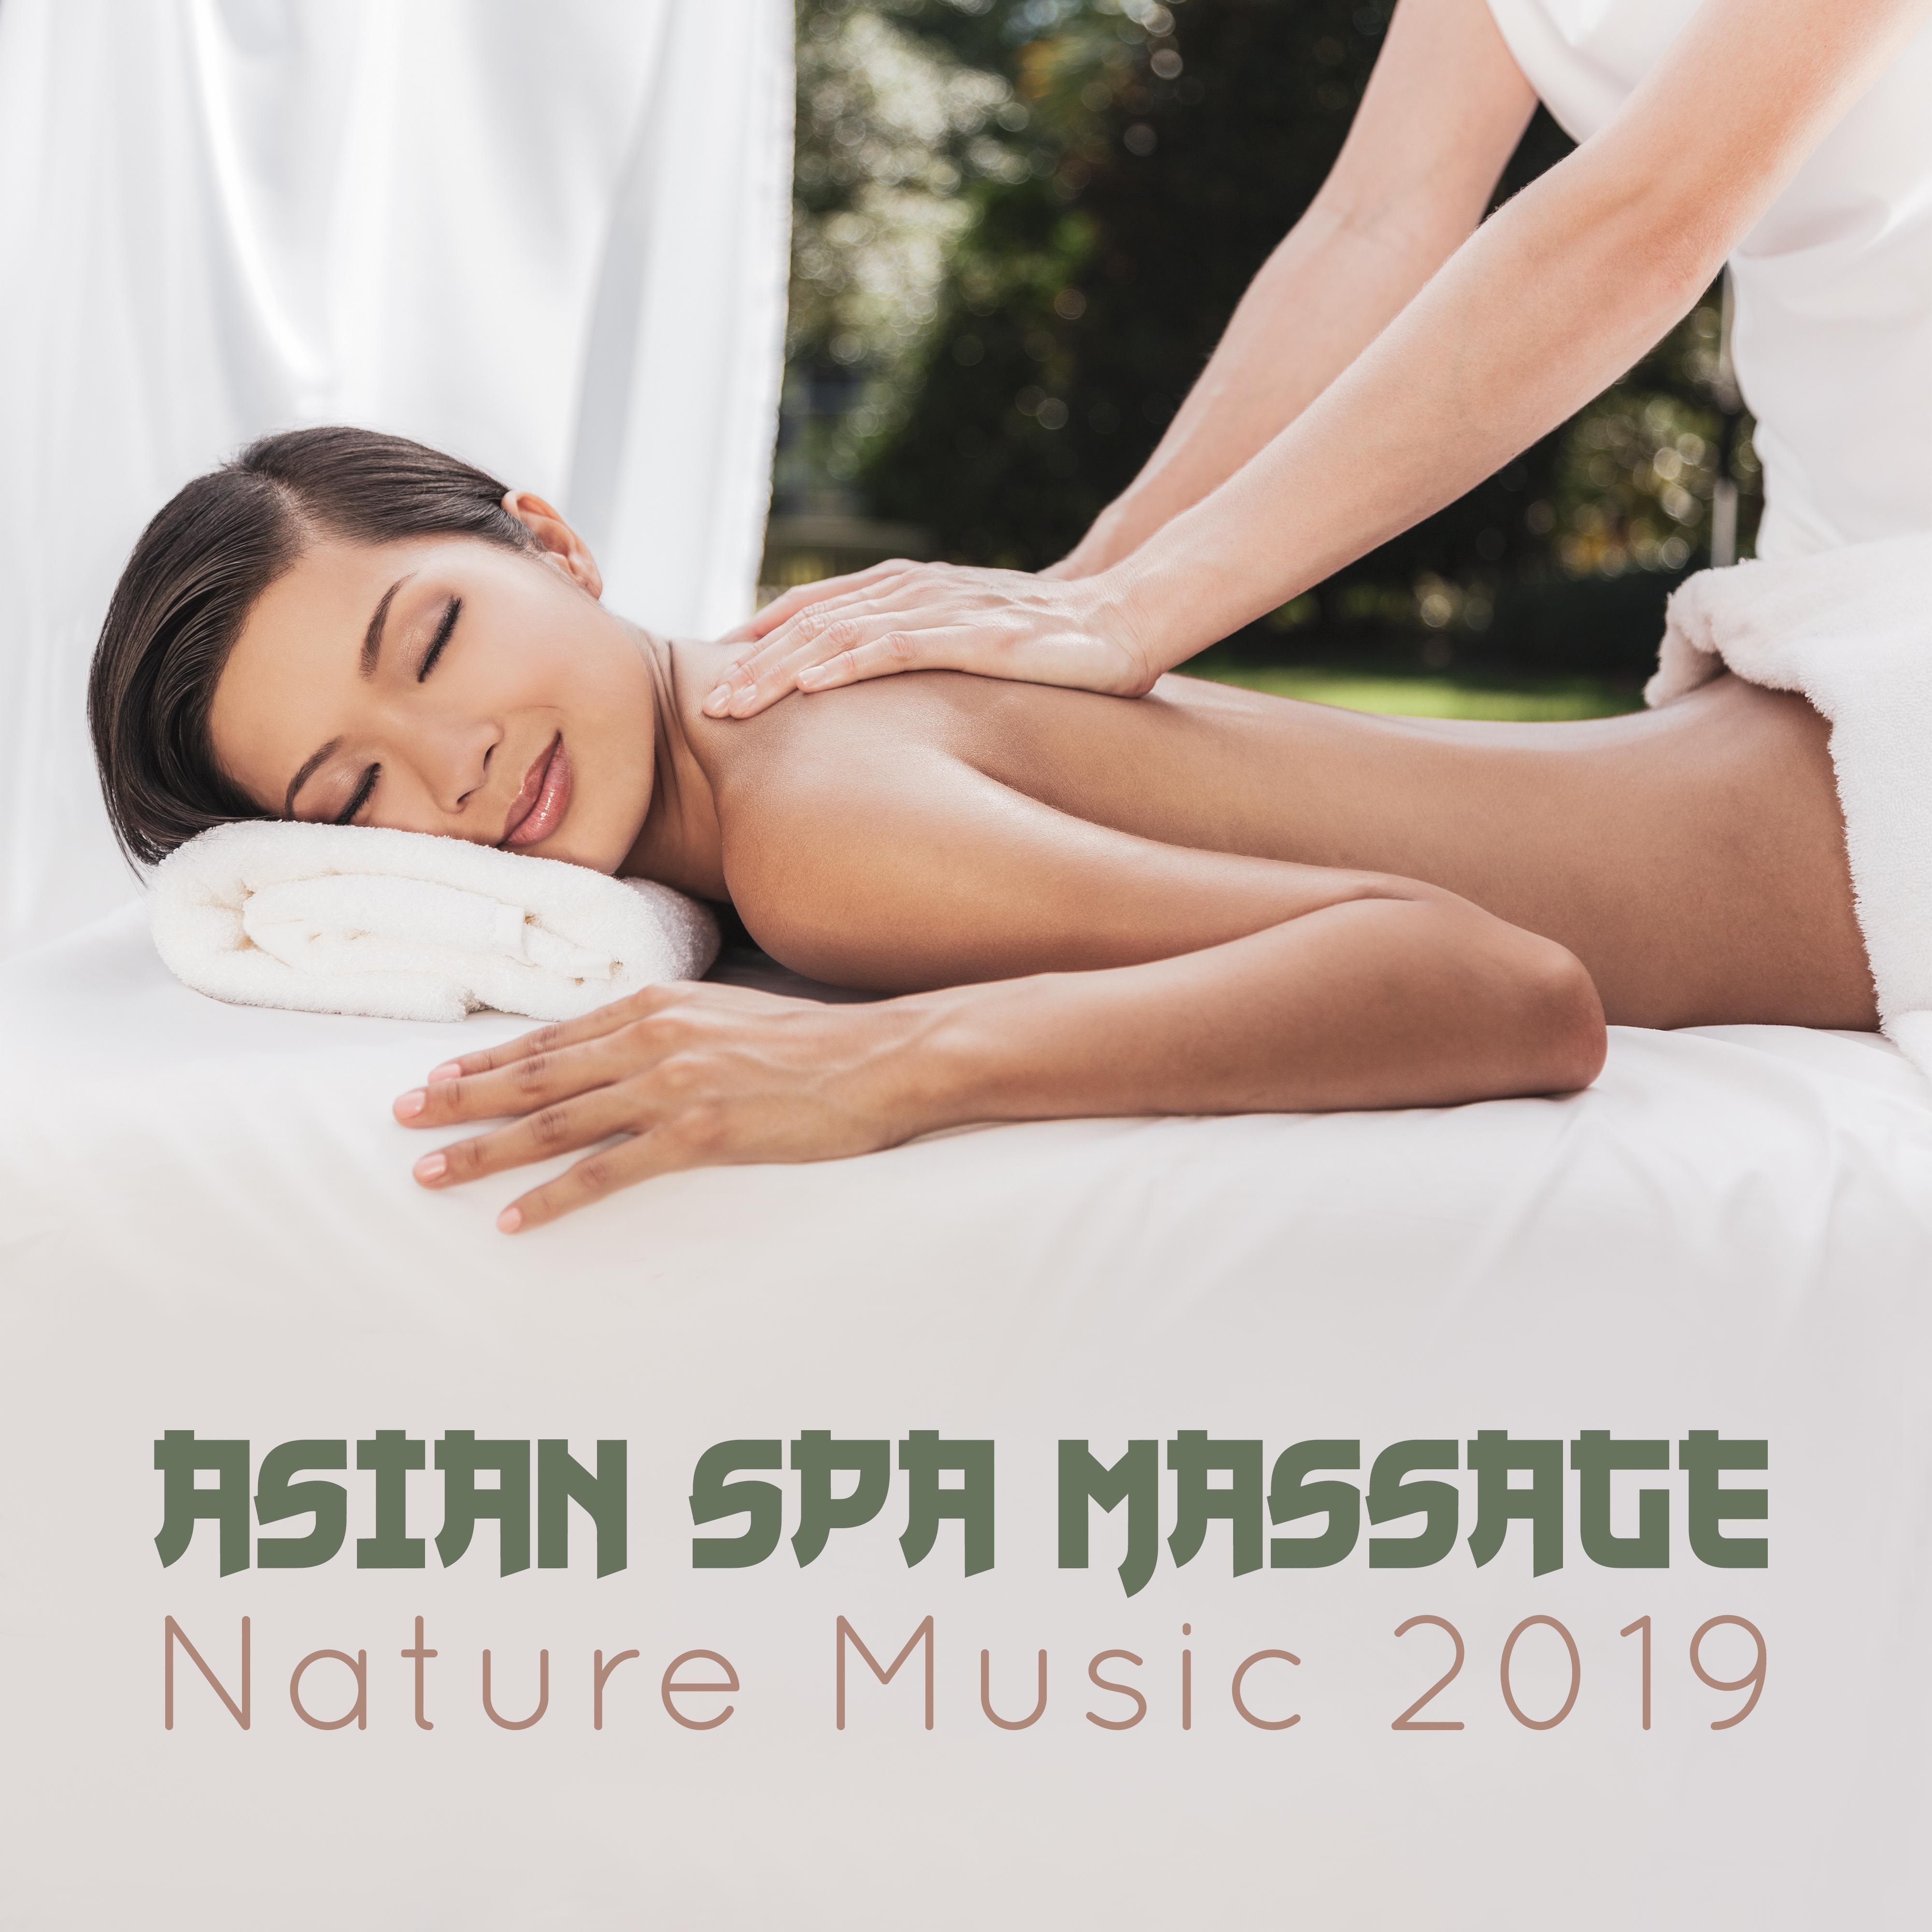 Asian Spa Massage Nature Music 2019